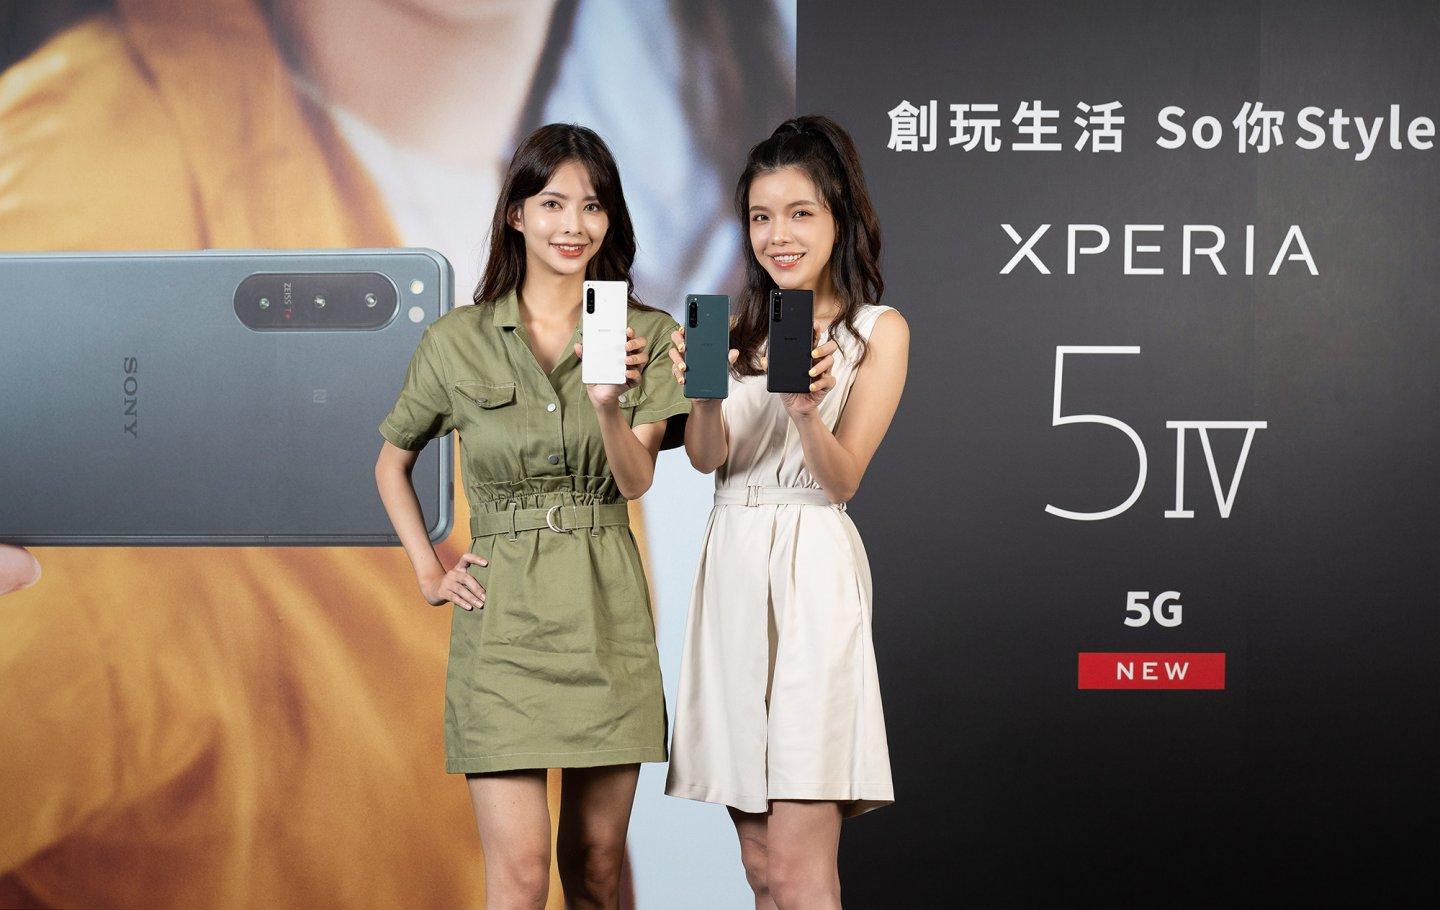 Sony 推出旗艦新手機 Xperia 5 IV 三鏡頭皆可支援4K HDR 120fps 錄影及眼部、物件追蹤對焦